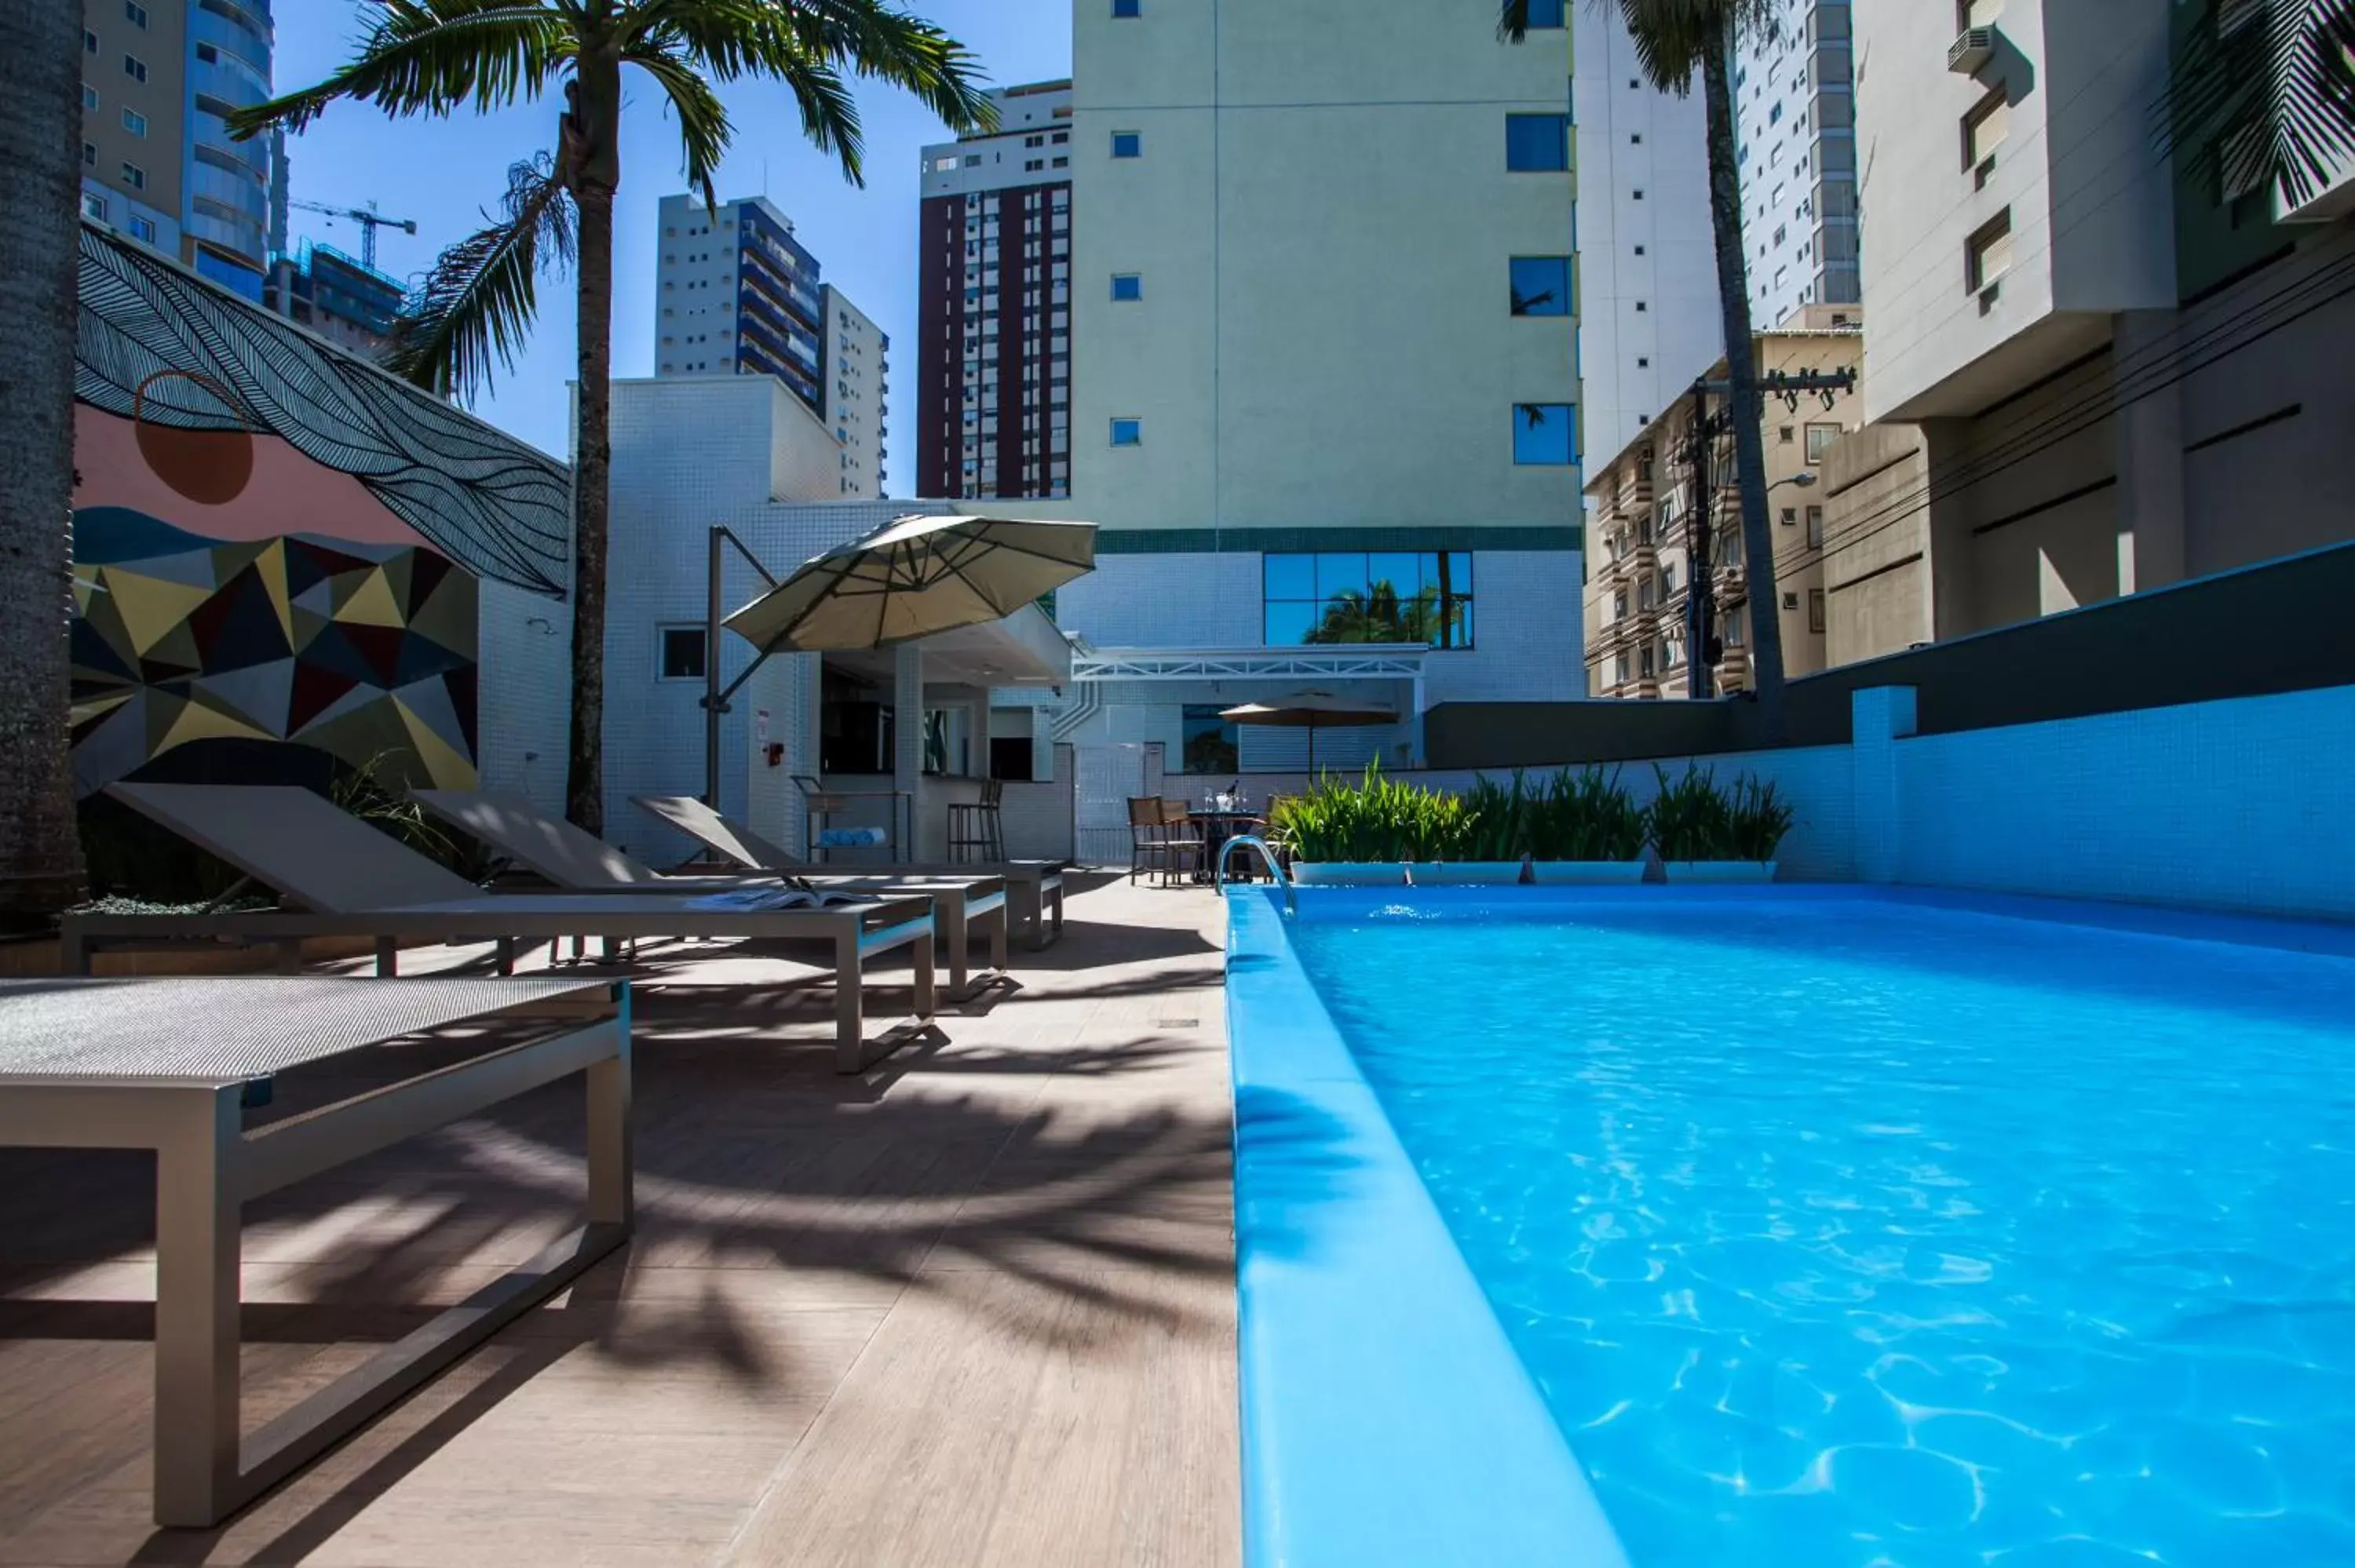 Swimming Pool in Santa Inn Hotel